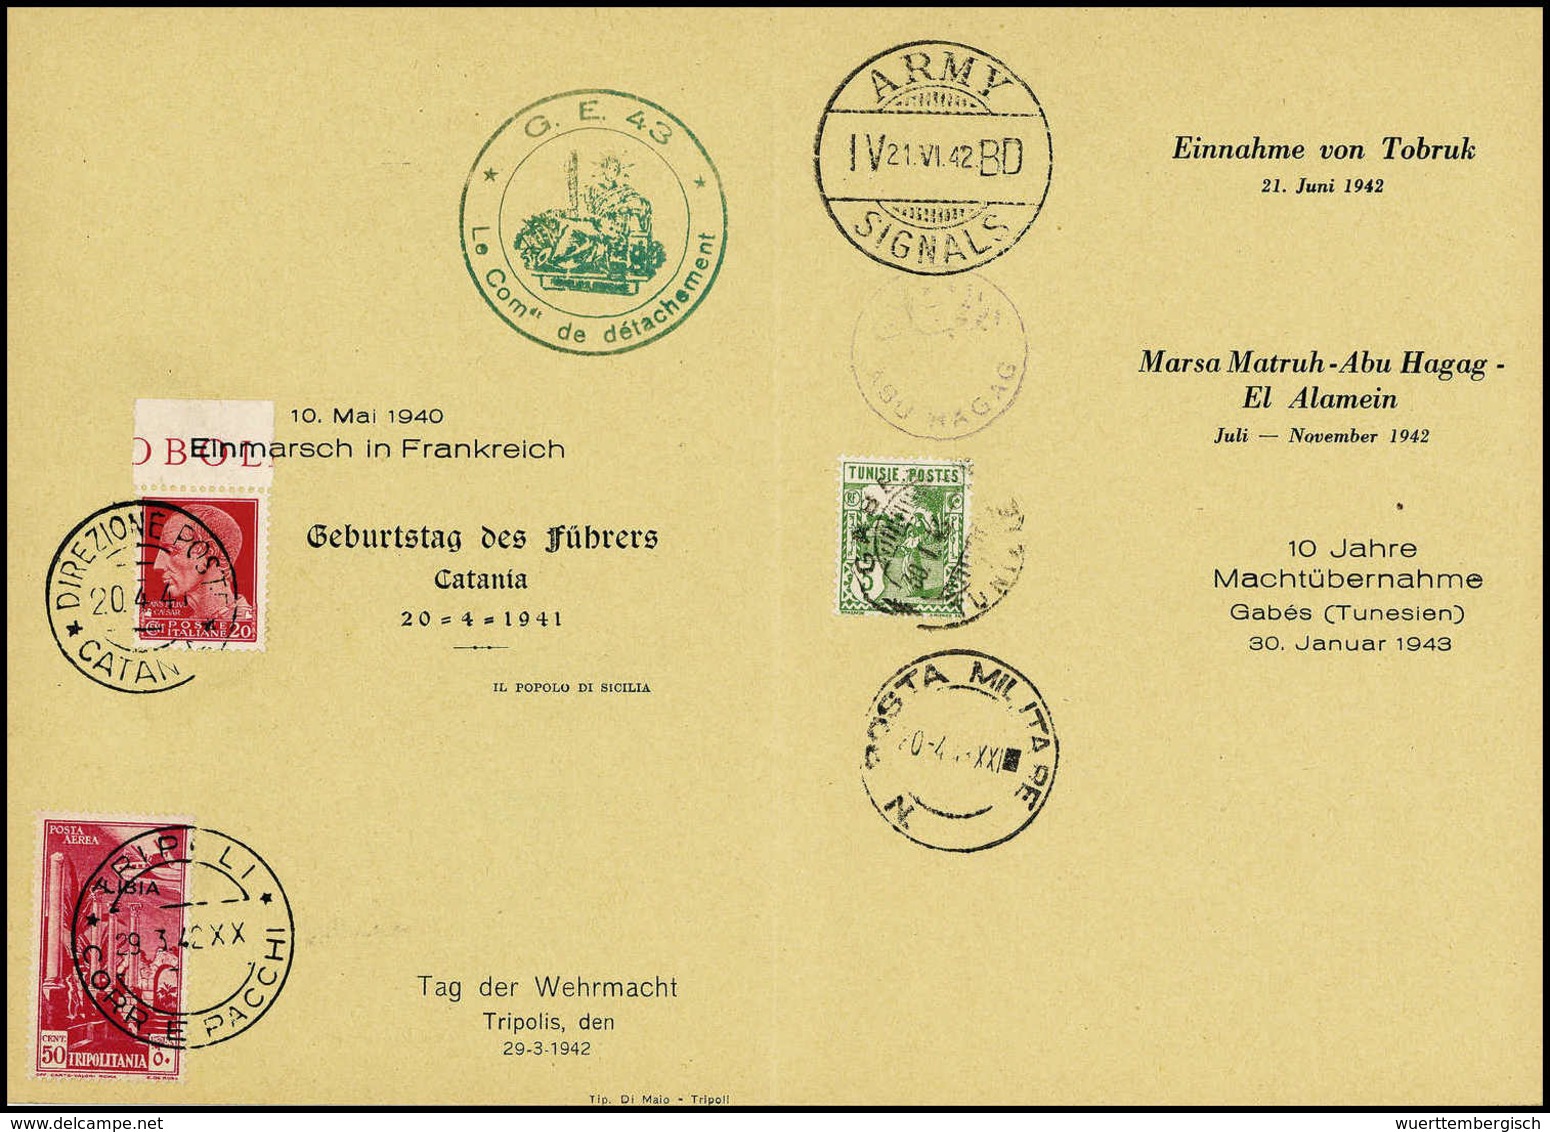 Beleg Spezial-Sammlung Rommel-Gedenkblätter: außergewöhnliche Sammlung von drei offiziellen Gedenkblättern mit roten Reg